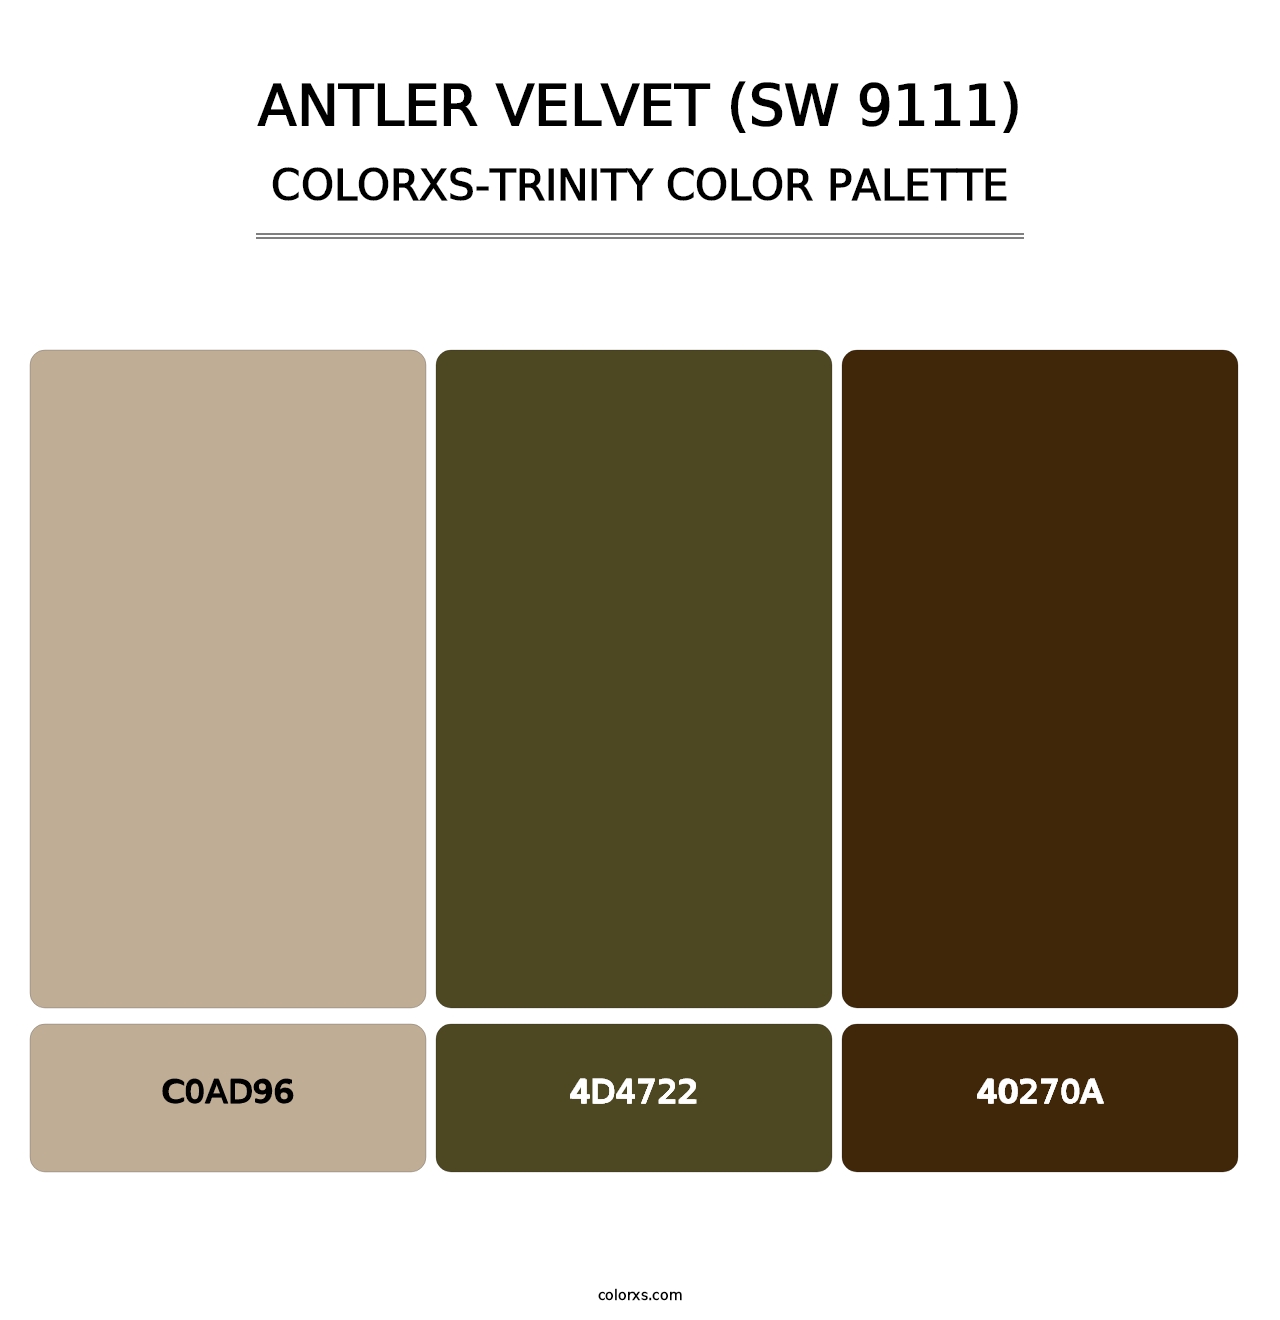 Antler Velvet (SW 9111) - Colorxs Trinity Palette